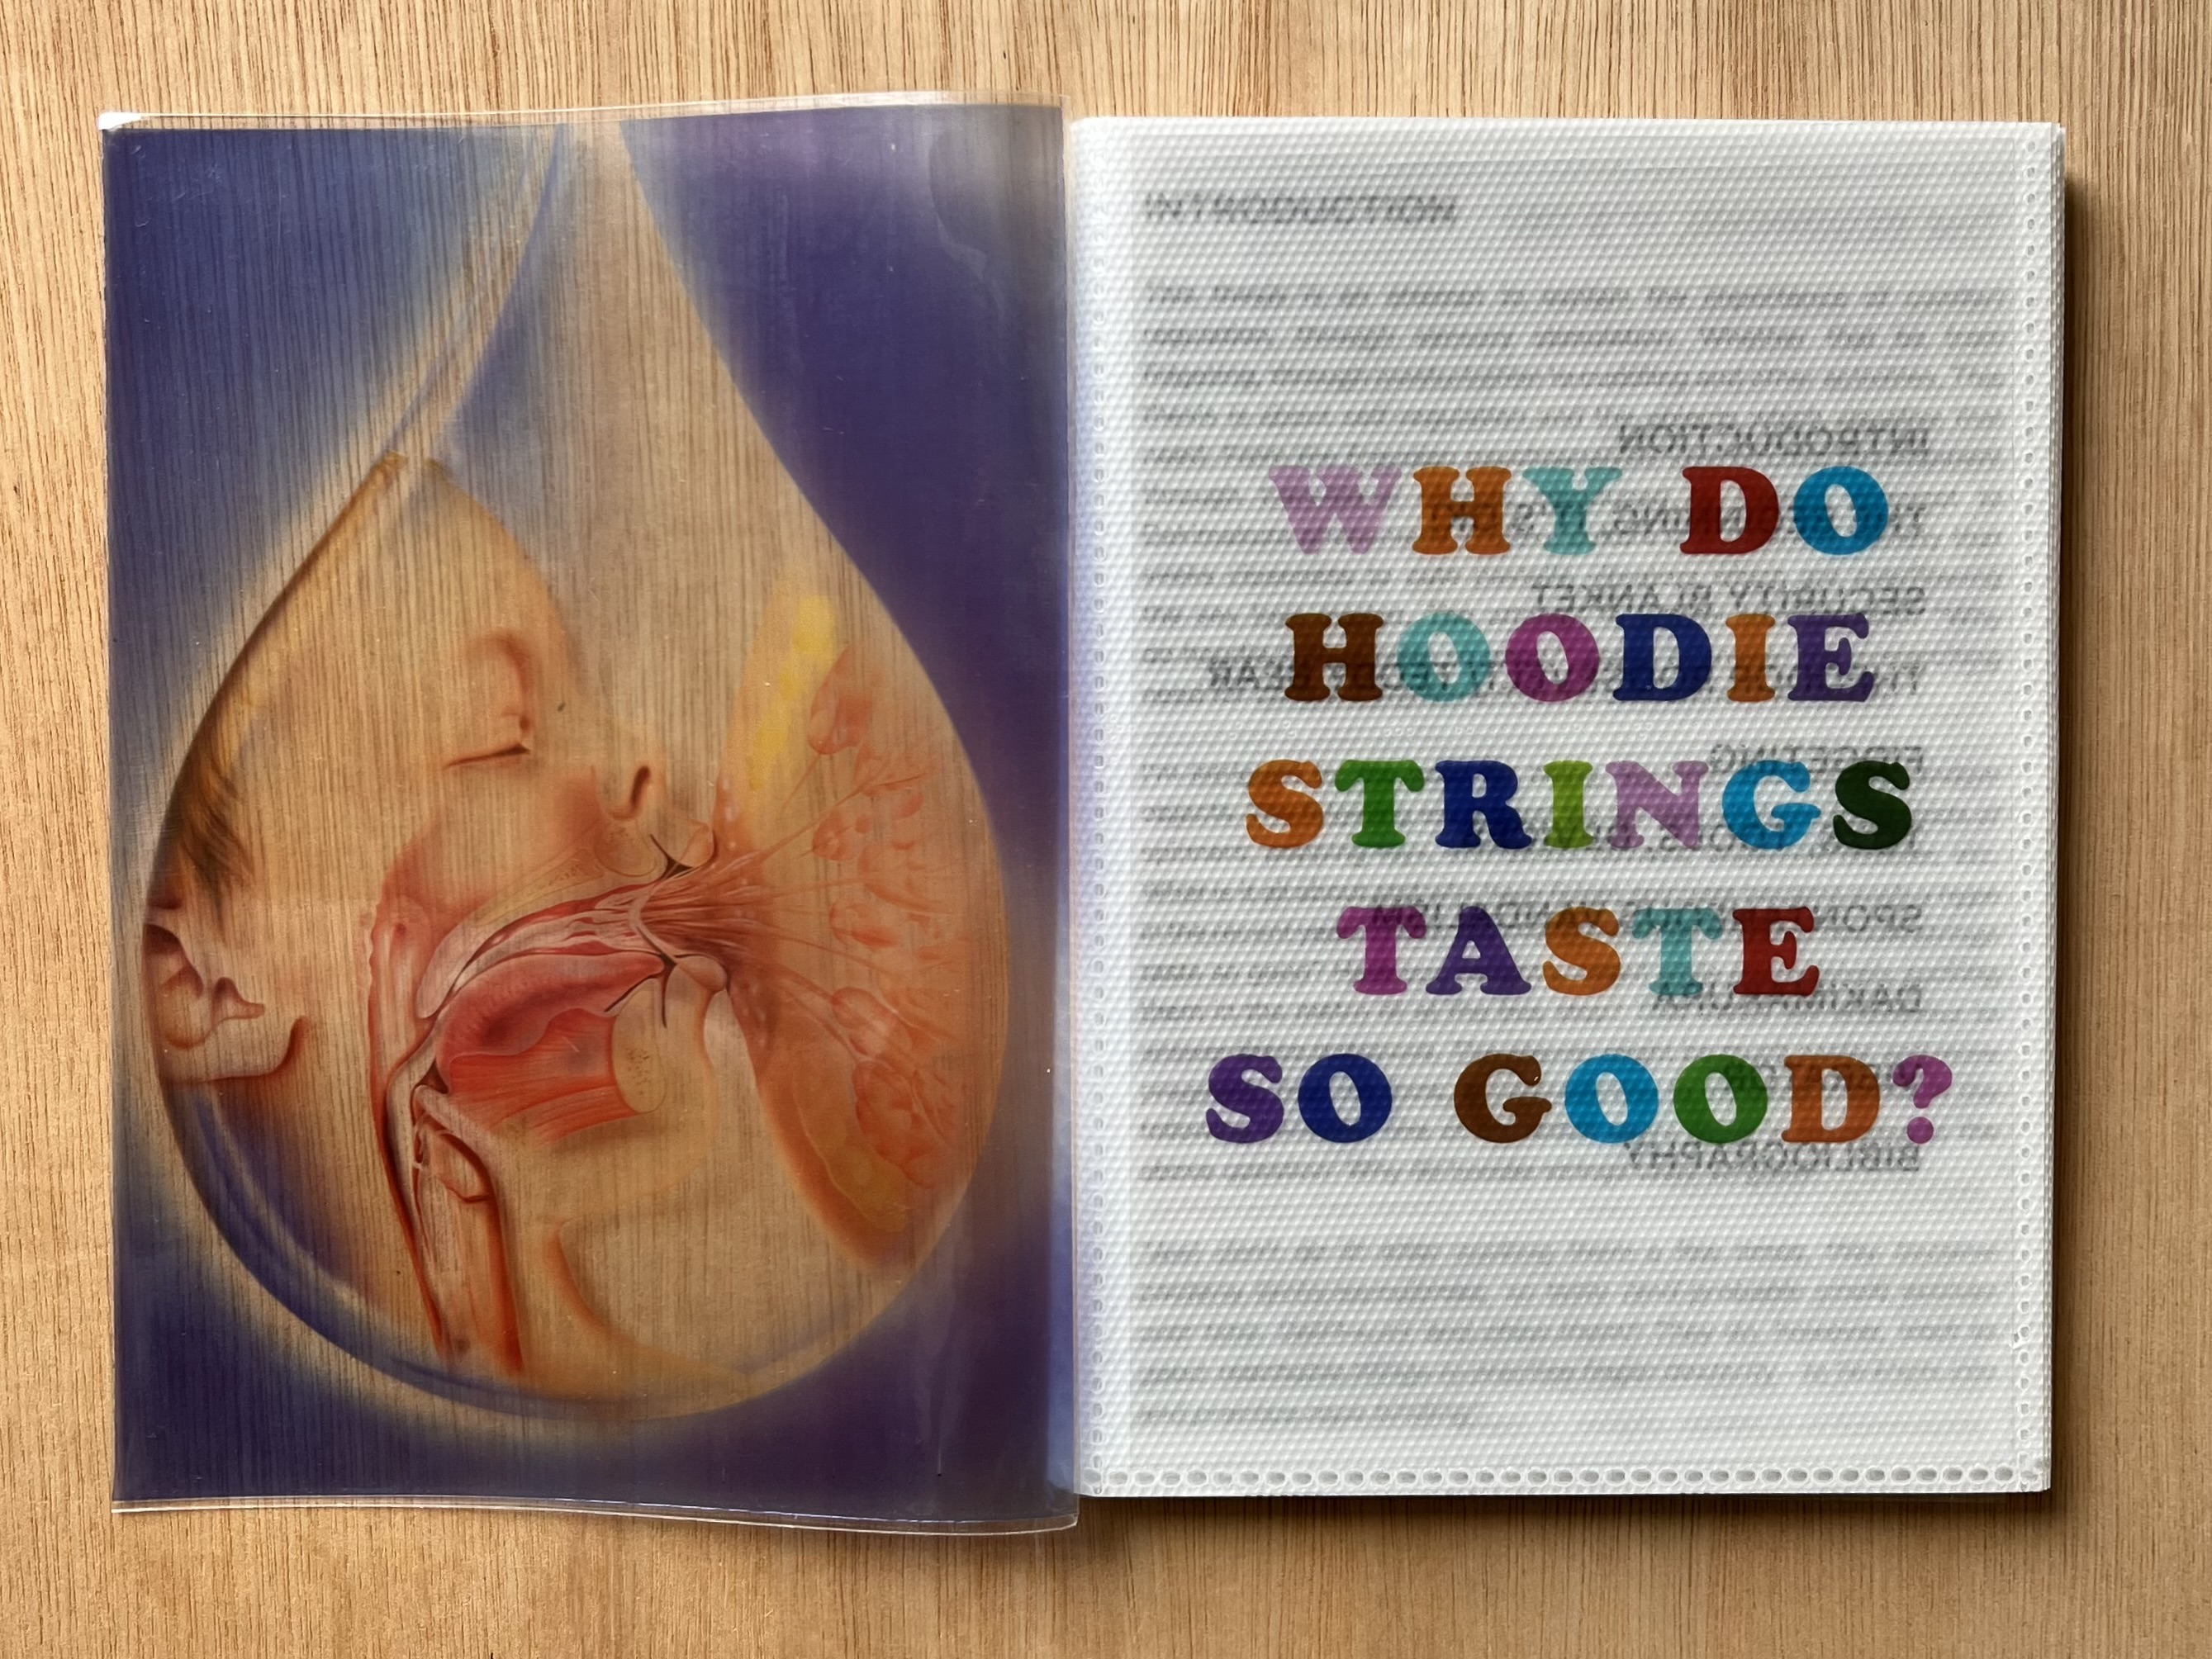 Ignacy Radtke - Why do hoodie strings taste so good? - Printed Matter